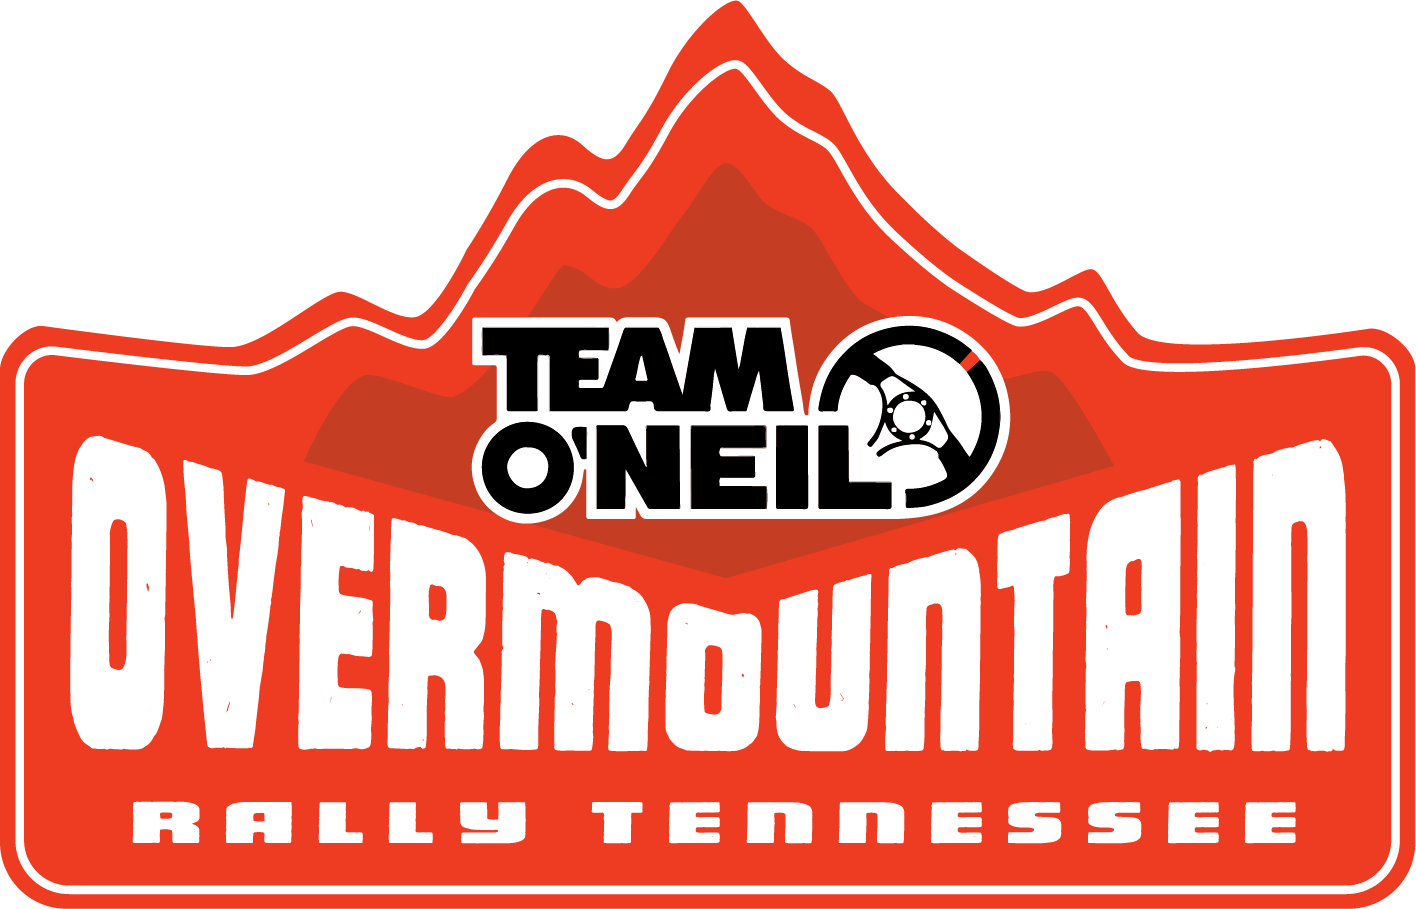 Overmountain Rally Tennessee 